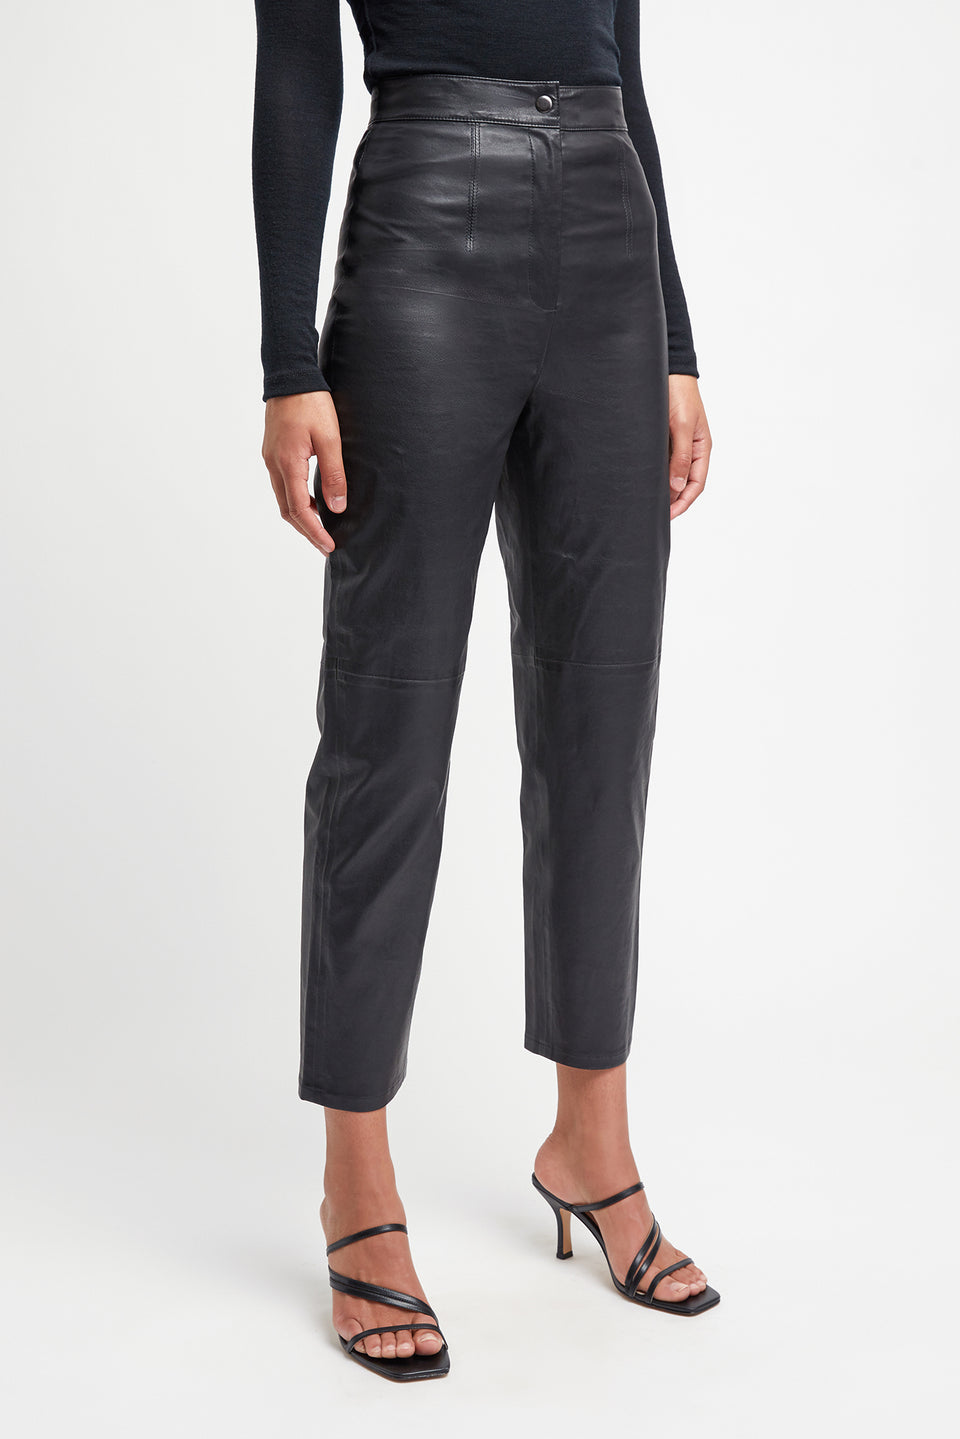 Buy Clemence Leather Trouser Black Online | Australia